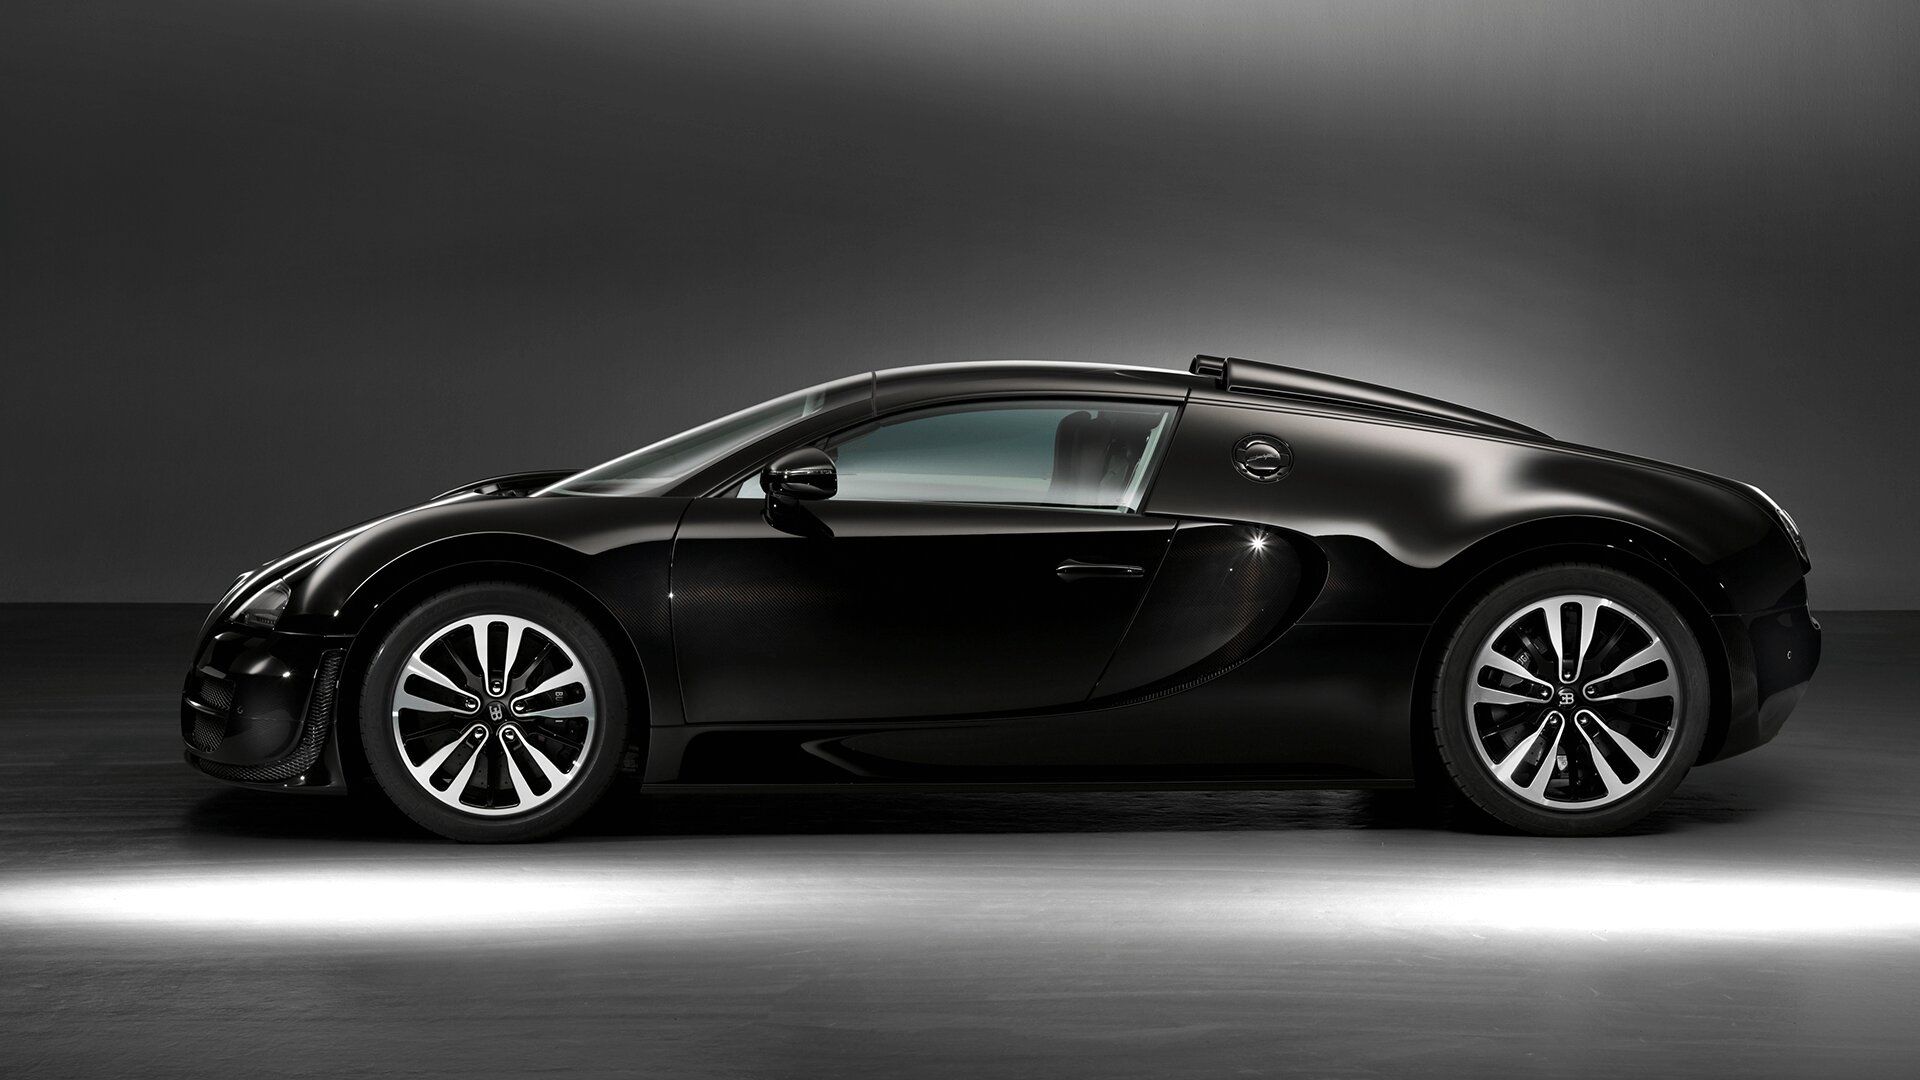 Bugatti Veyron Jean Bugatti Edition